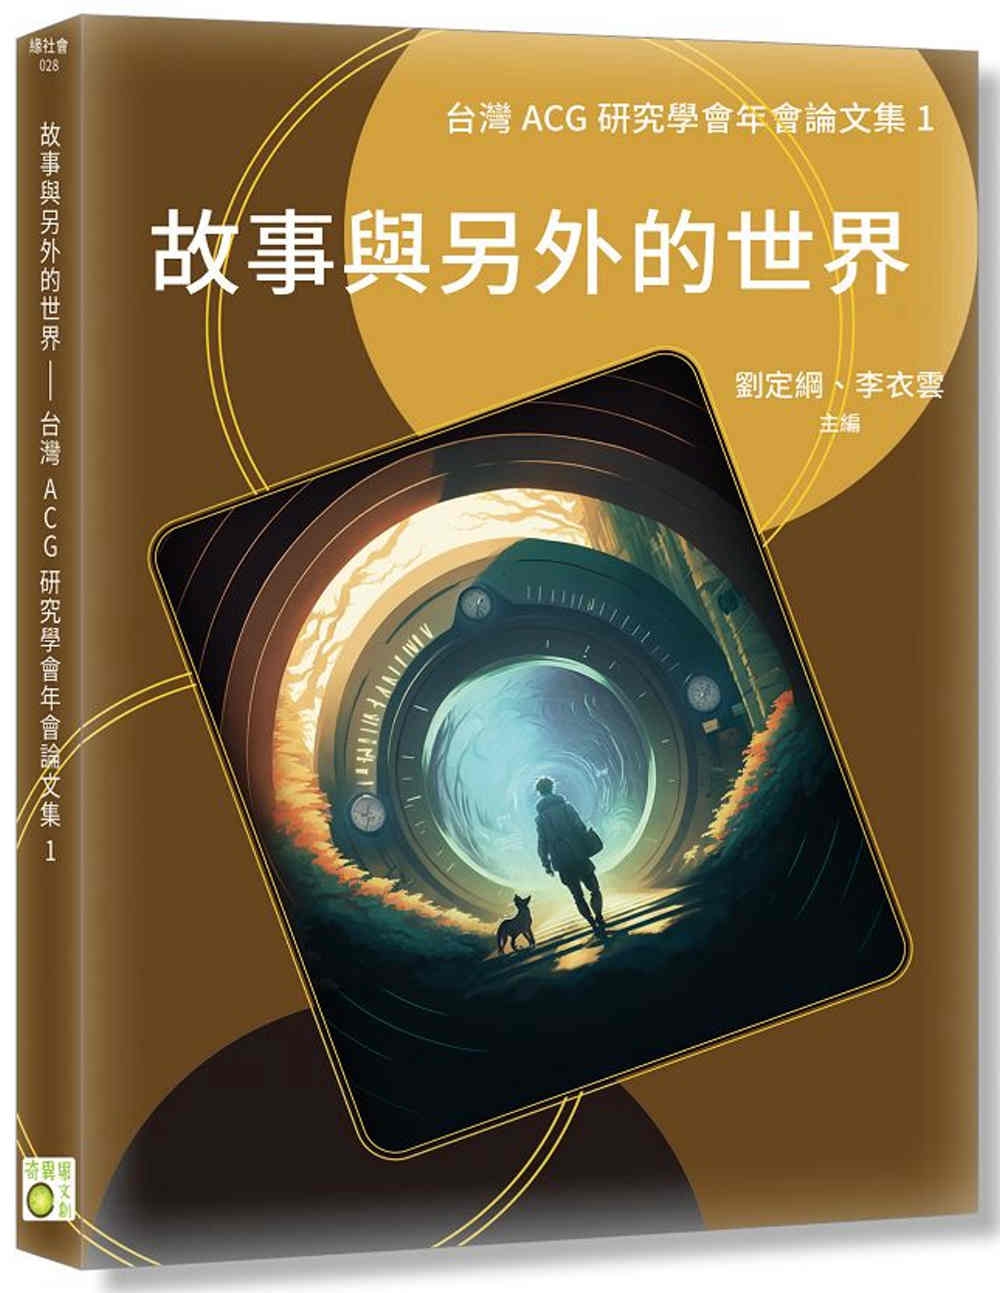 故事與另外的世界：台灣ACG研究學會年會論文集1